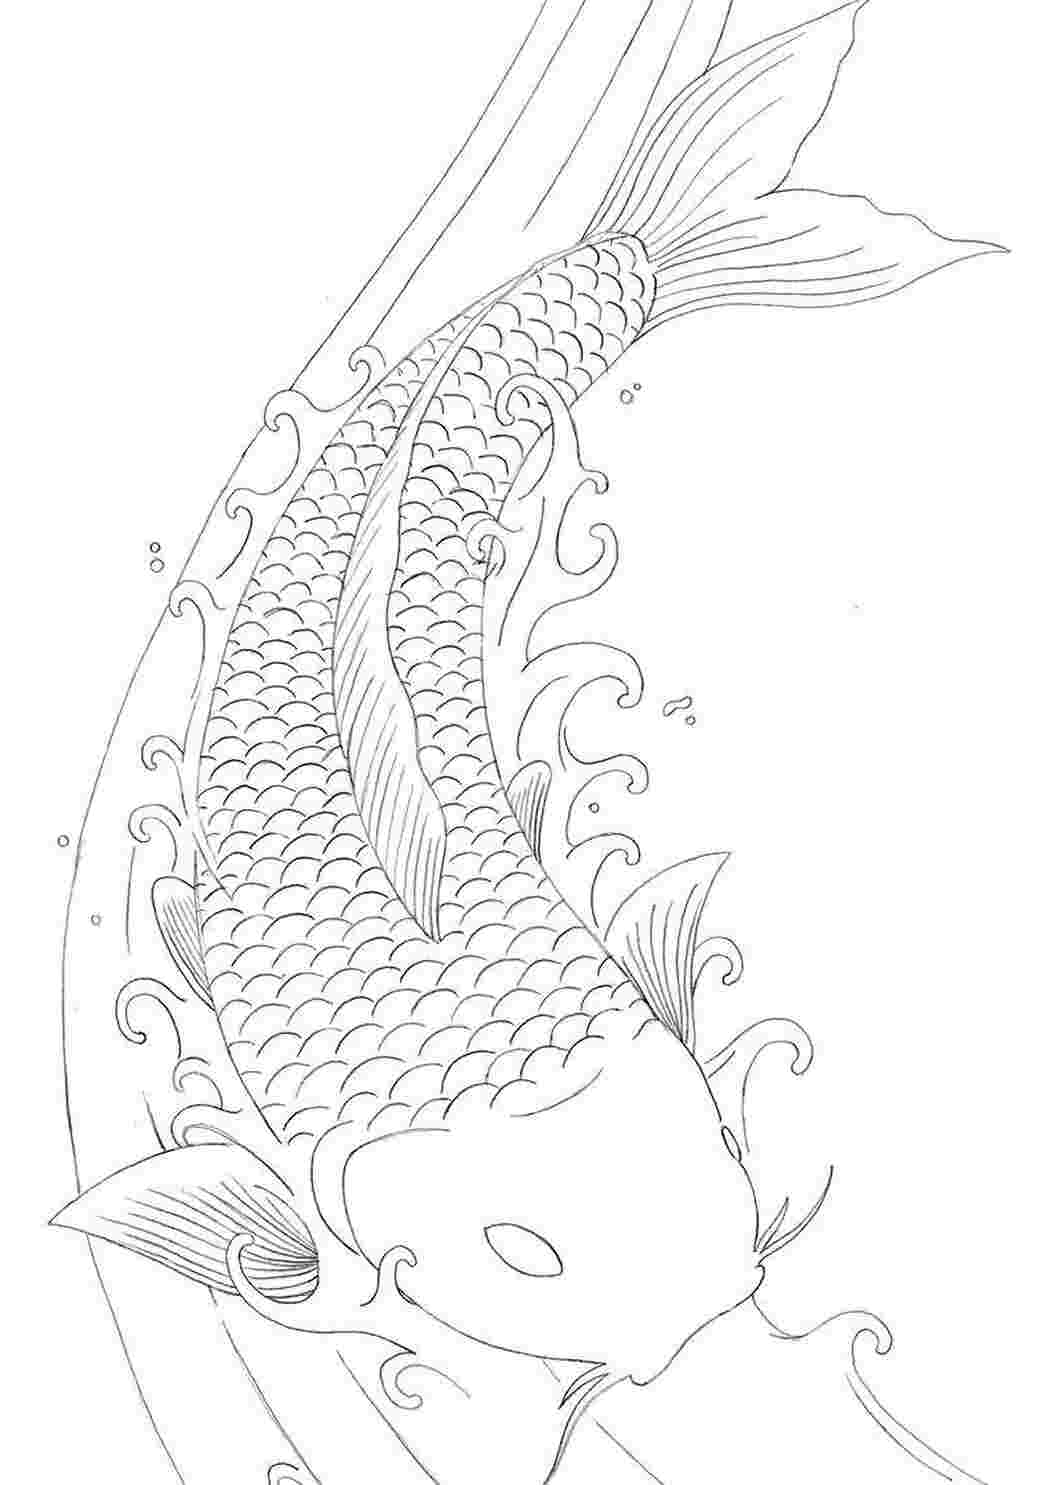 Рыба сом — рисунок для детей